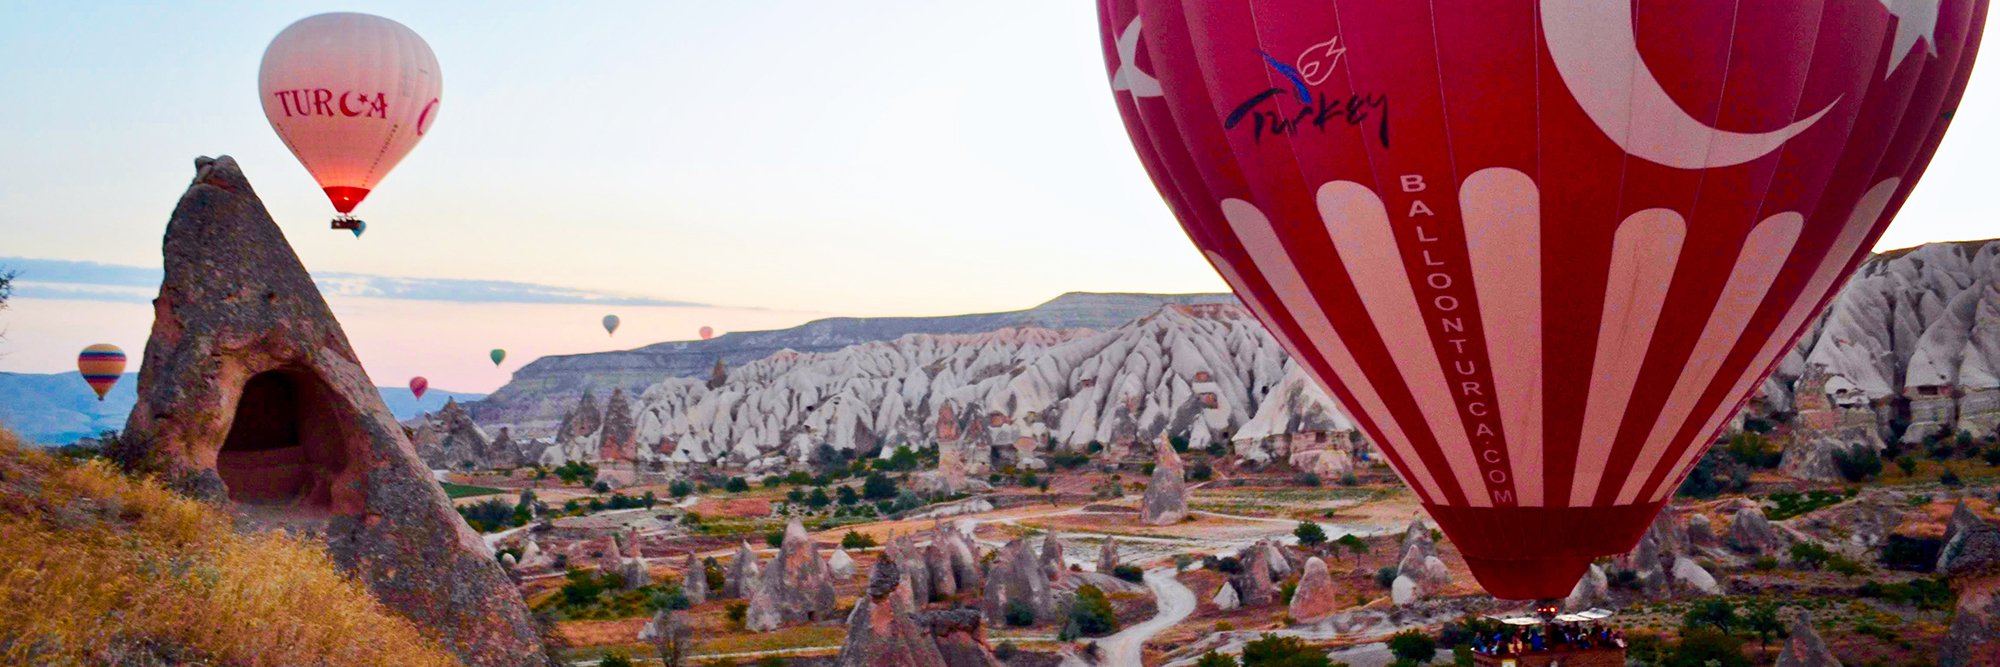 Hot air balloons over Ürgüp, Turkey